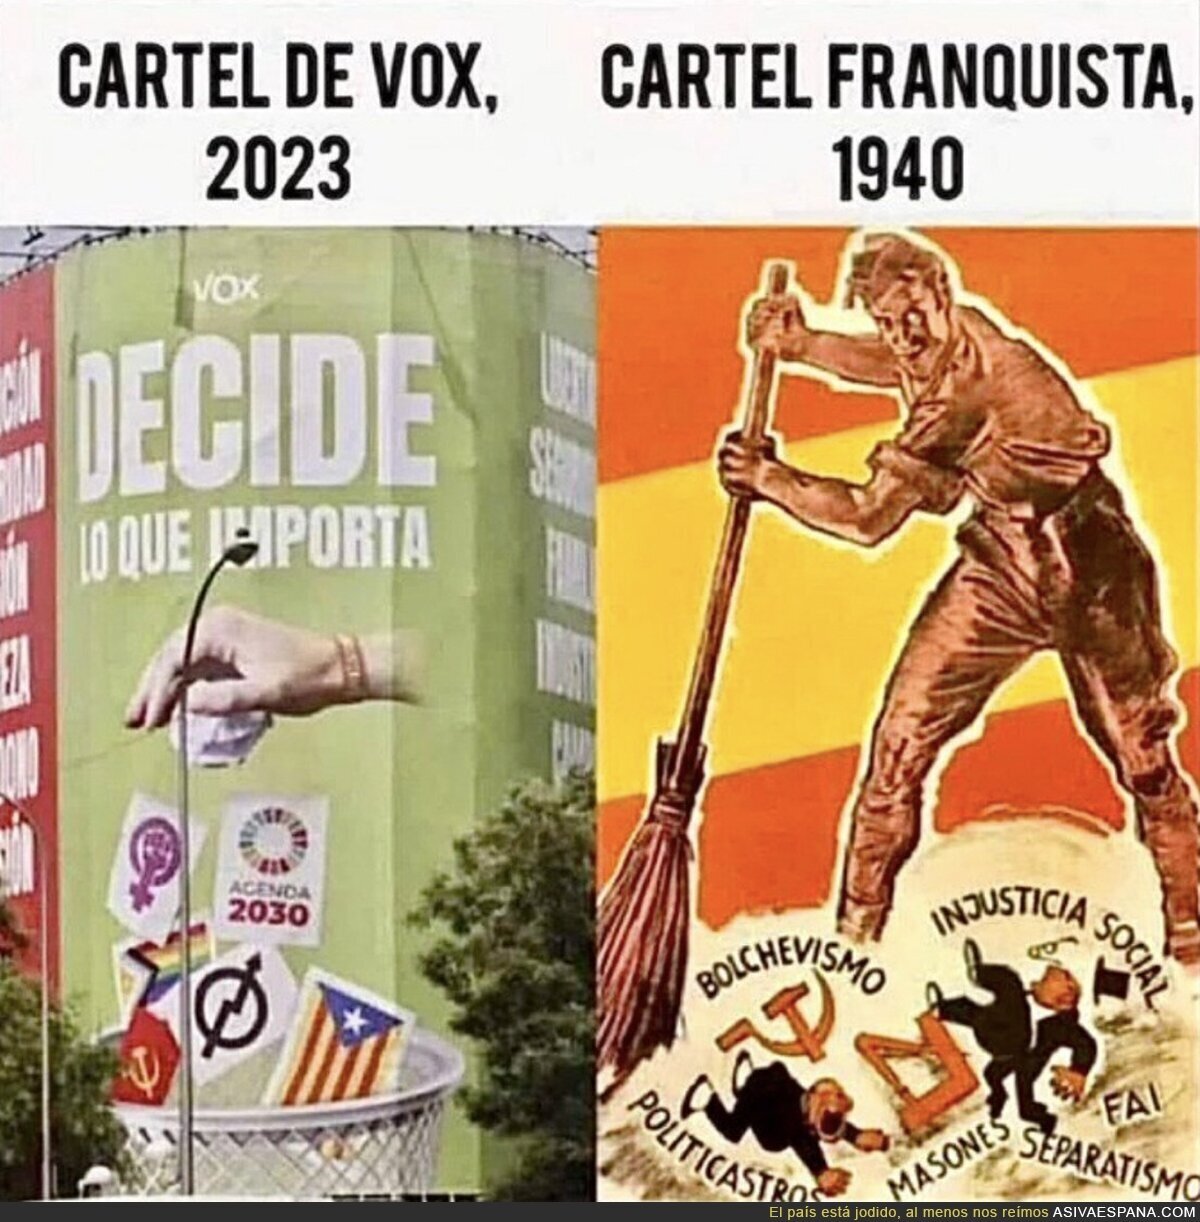 VOX es fascismo